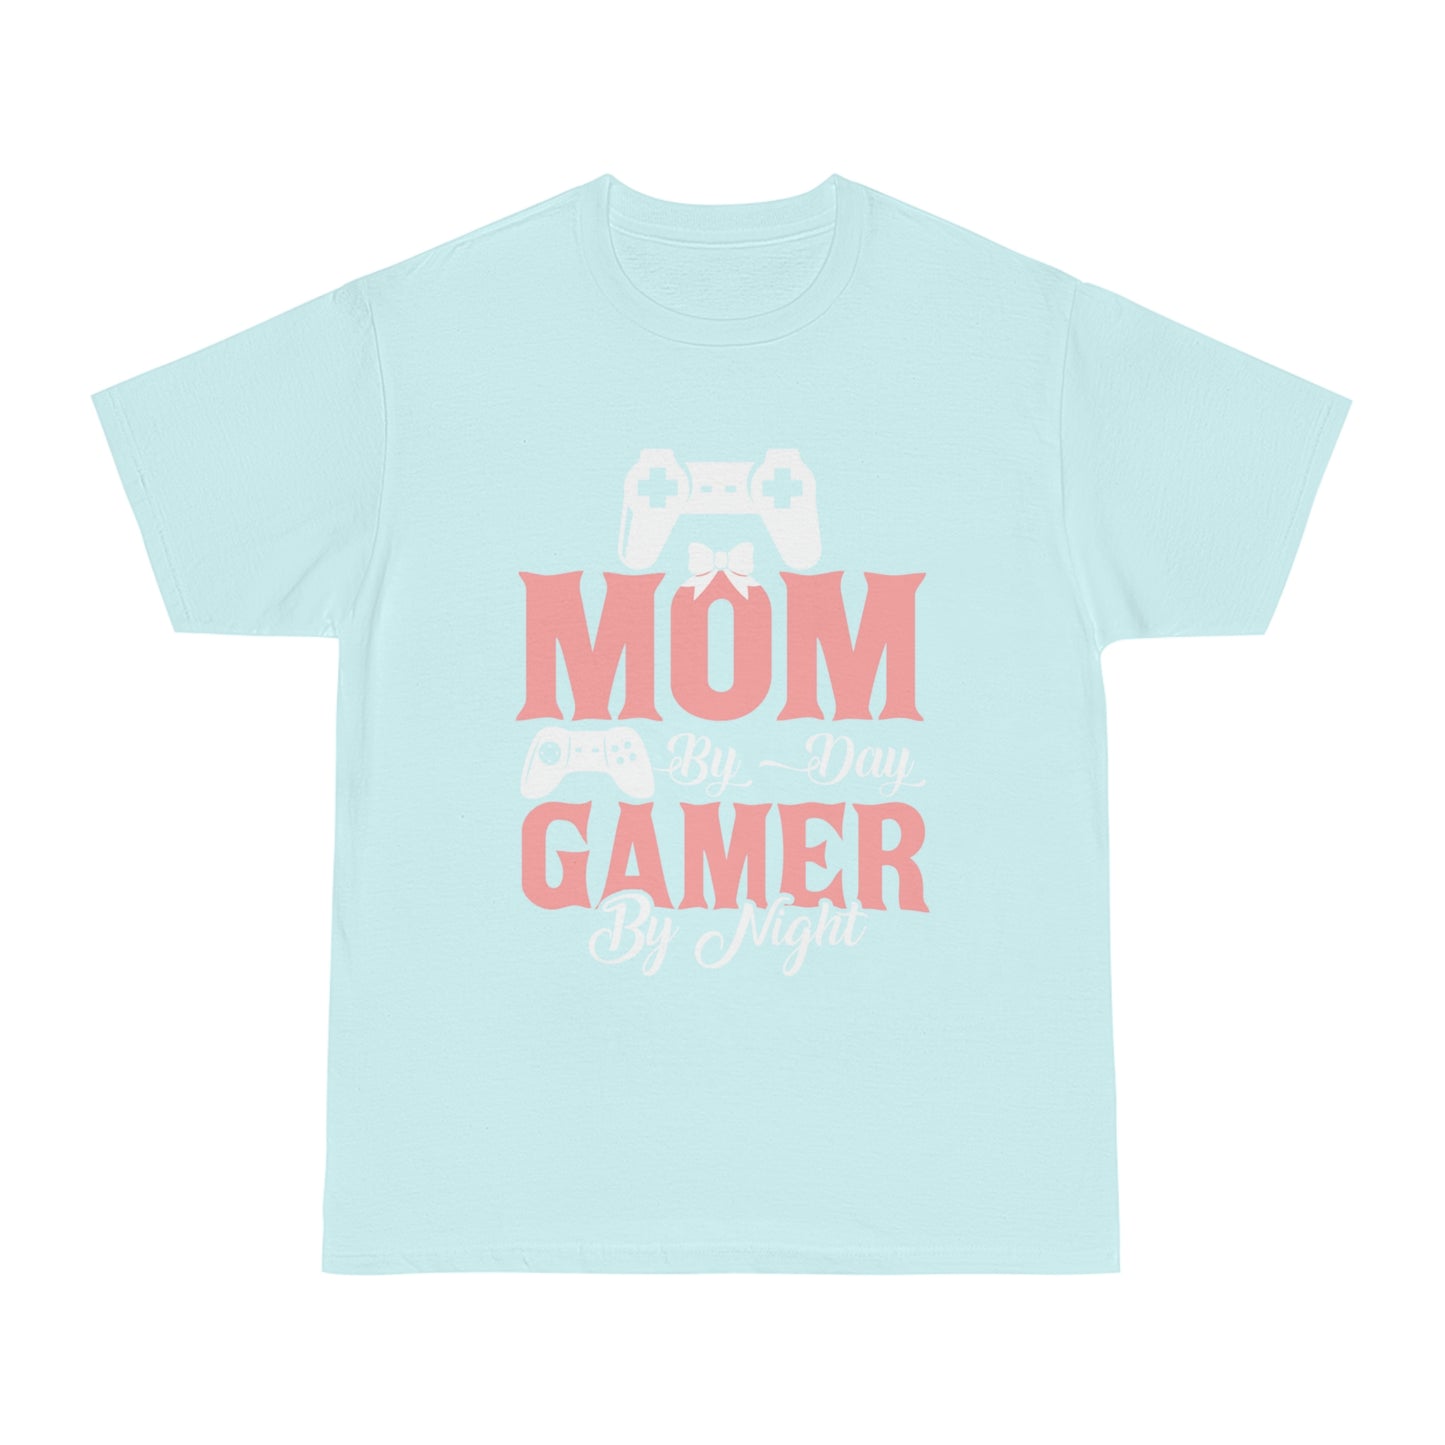 Mom By Day Gamer By Night